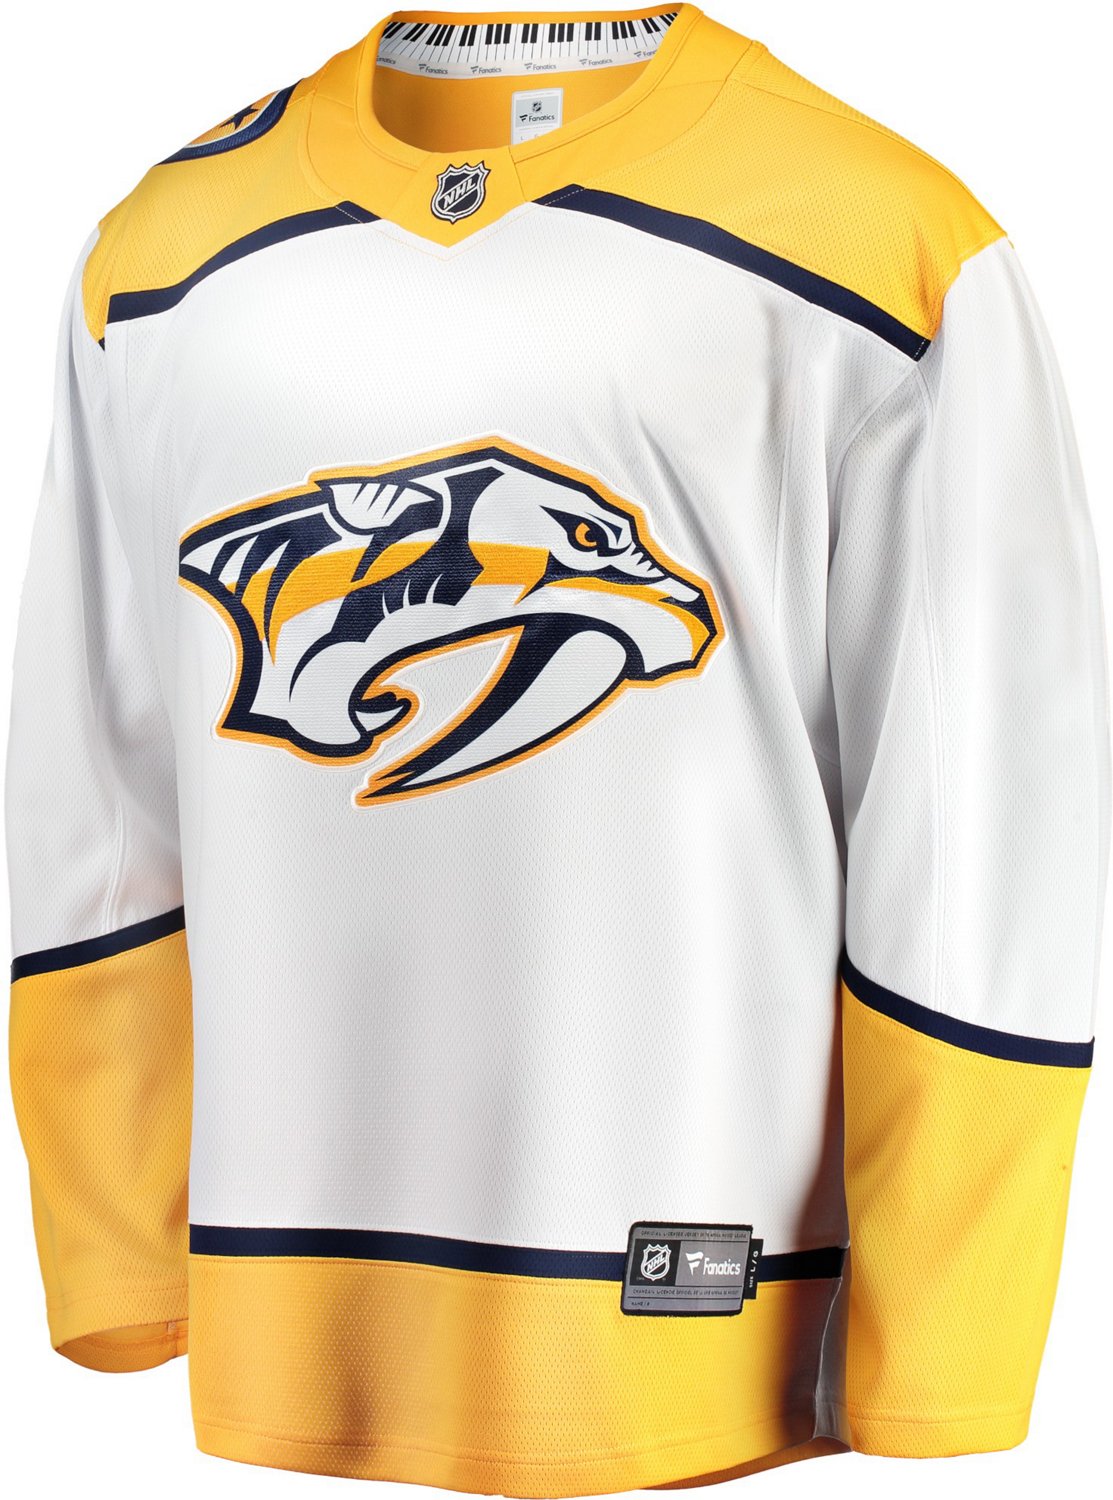 Nashville Predators discount jersey